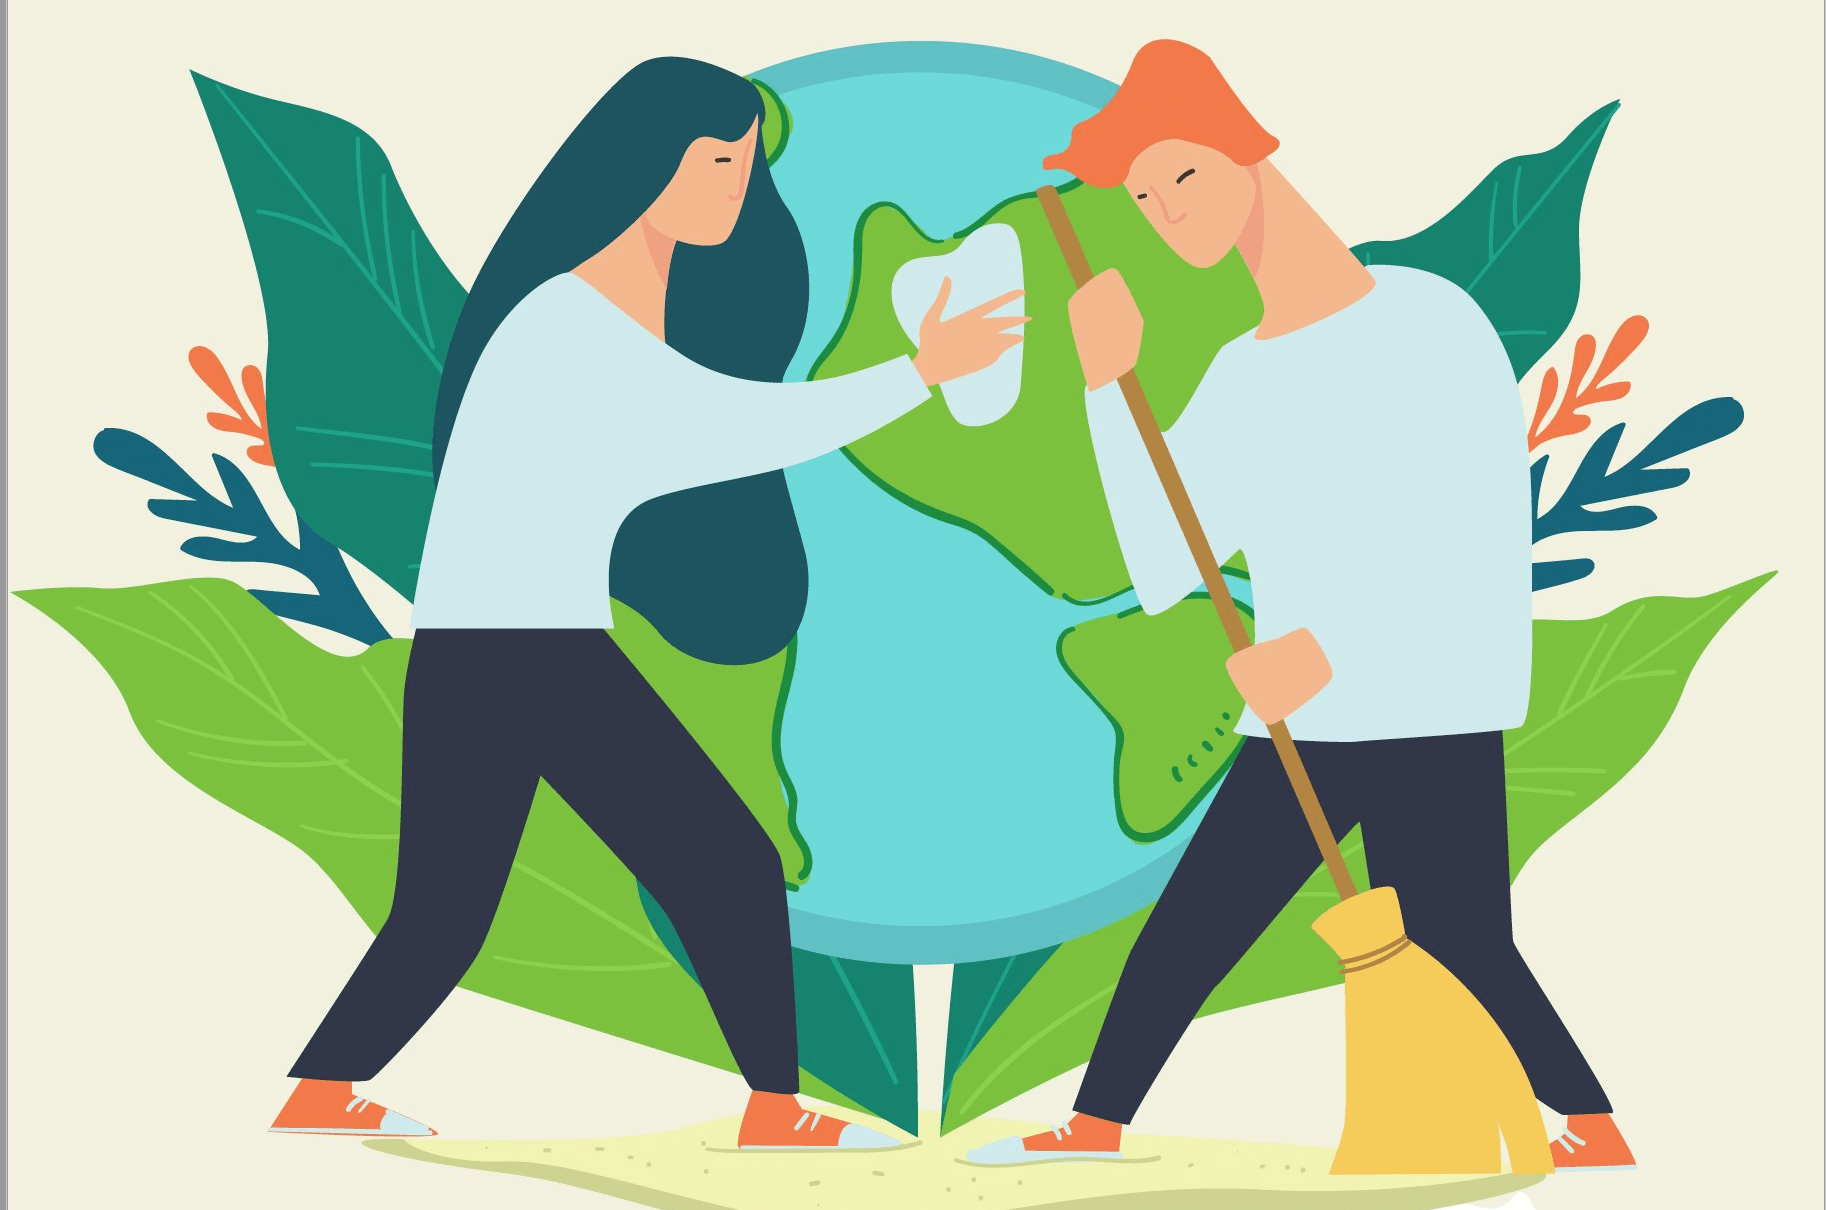 JUEVES con más sentido ilustración personas limpiando planeta